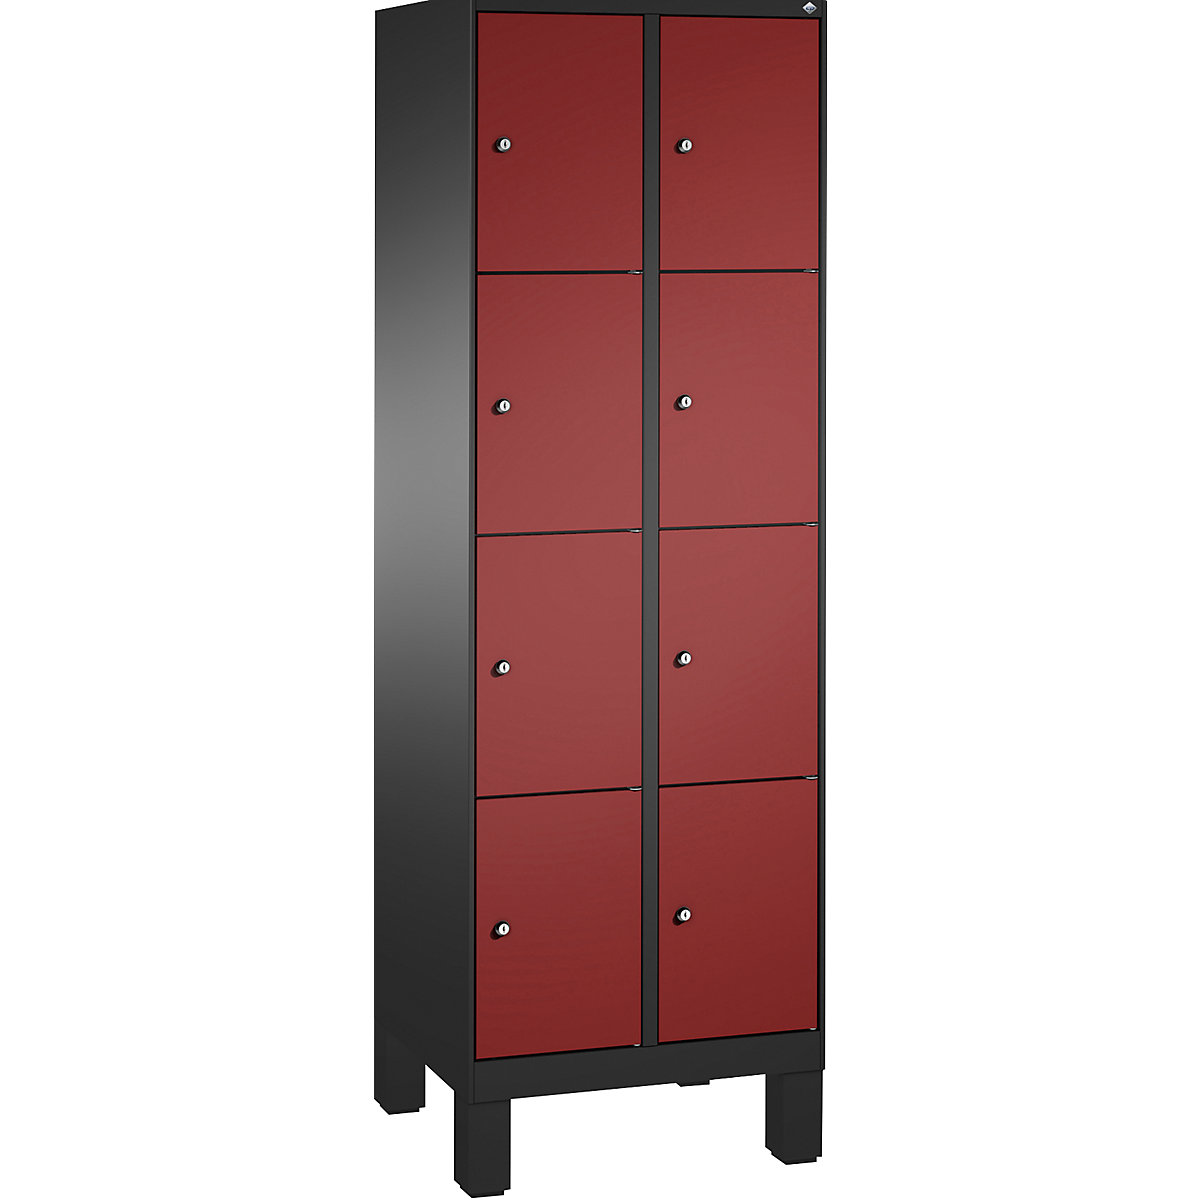 Armoire à casiers sur pieds EVOLO – C+P, 2 compartiments, 4 casiers chacun, largeur compartiments 300 mm, gris noir / rouge rubis-13